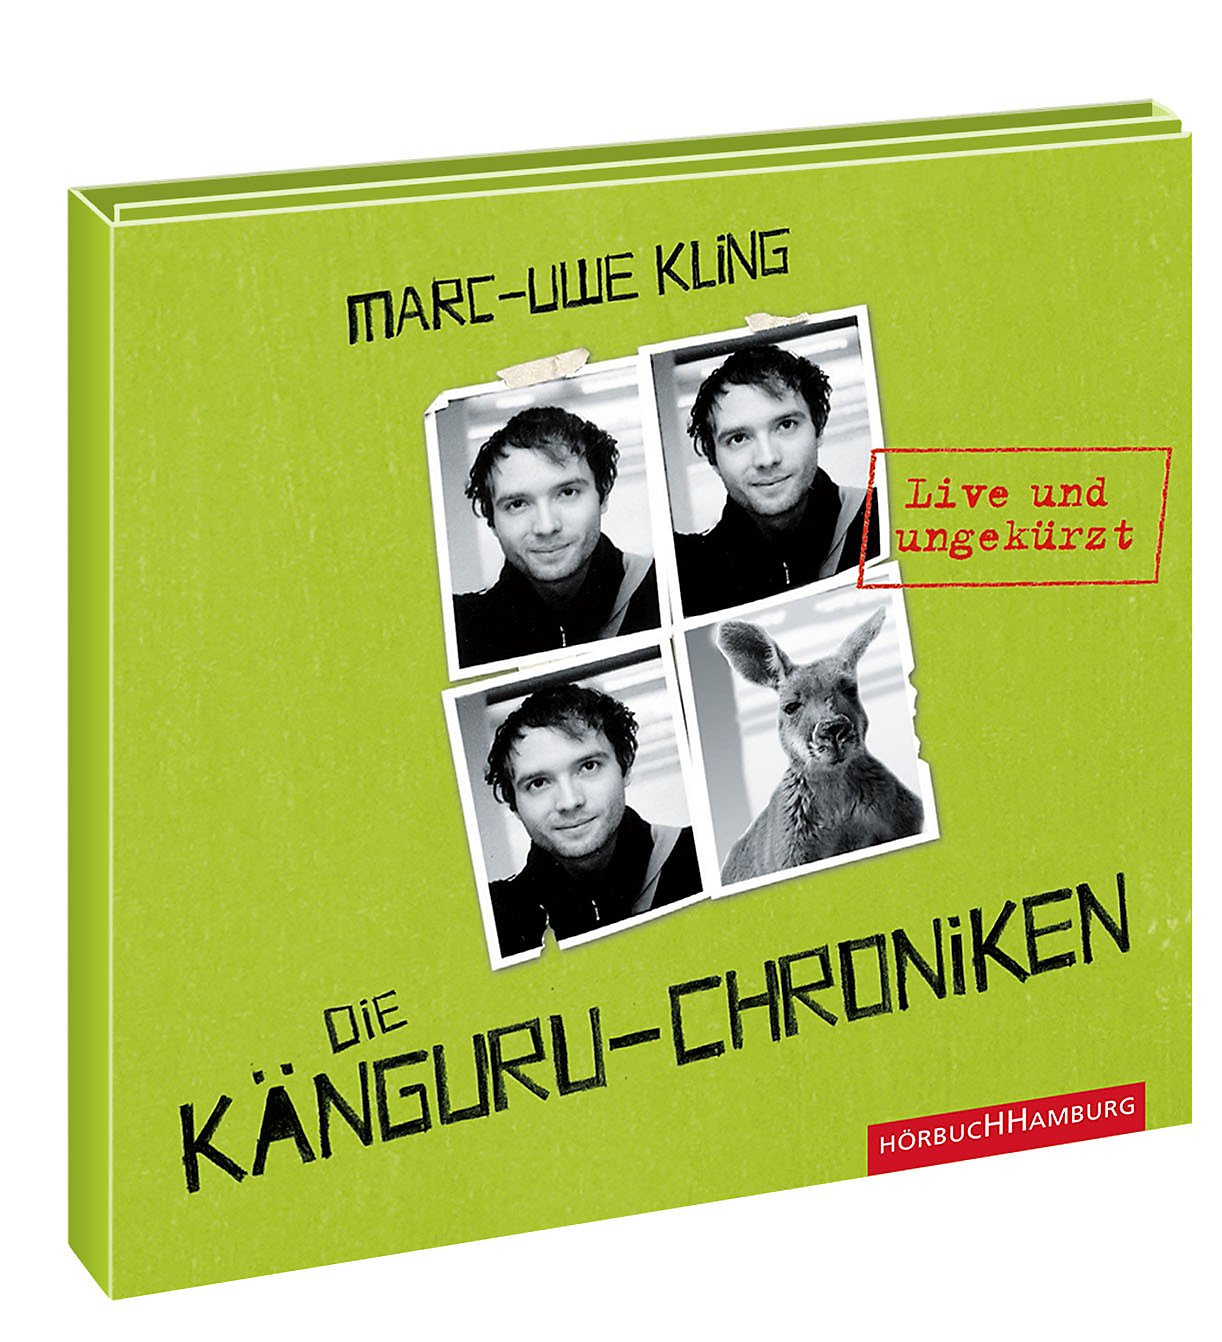 Känguru Chroniken Band 1 Die KänguruChroniken 4 Audio